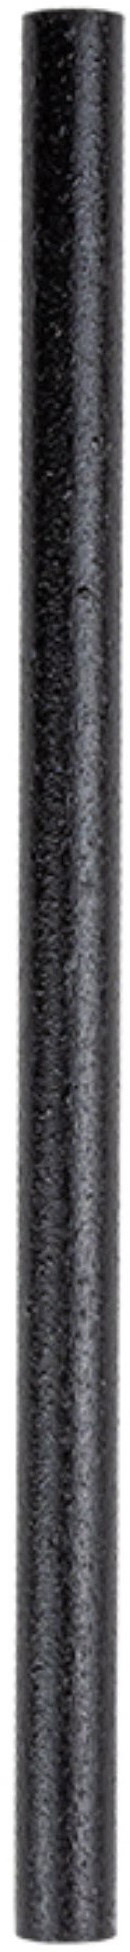 REFORK Pailles Cocktail 5344.4002 noir, 100 pcs.